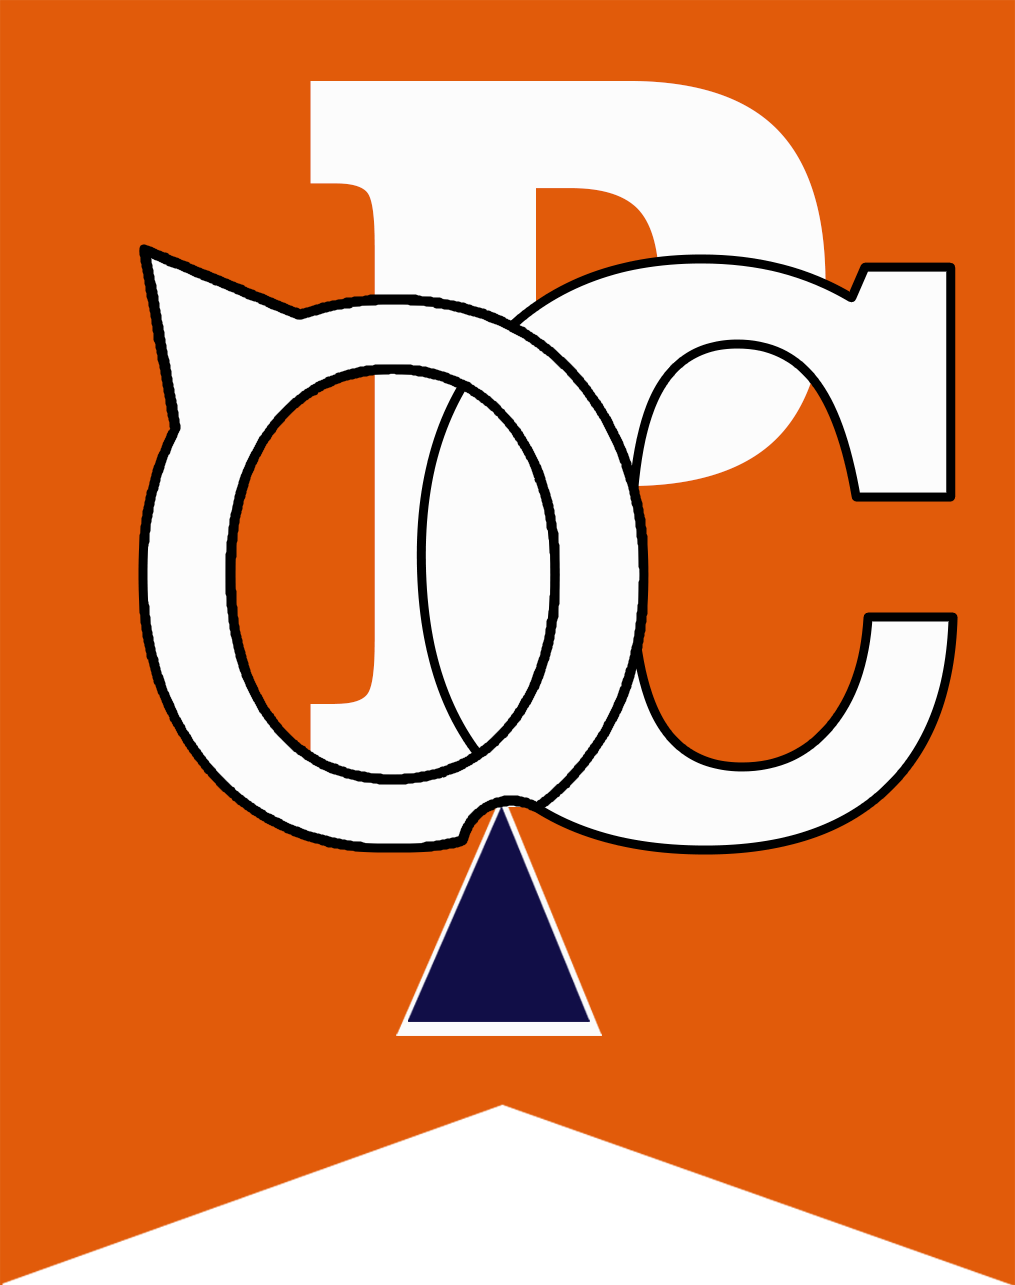 opc logo